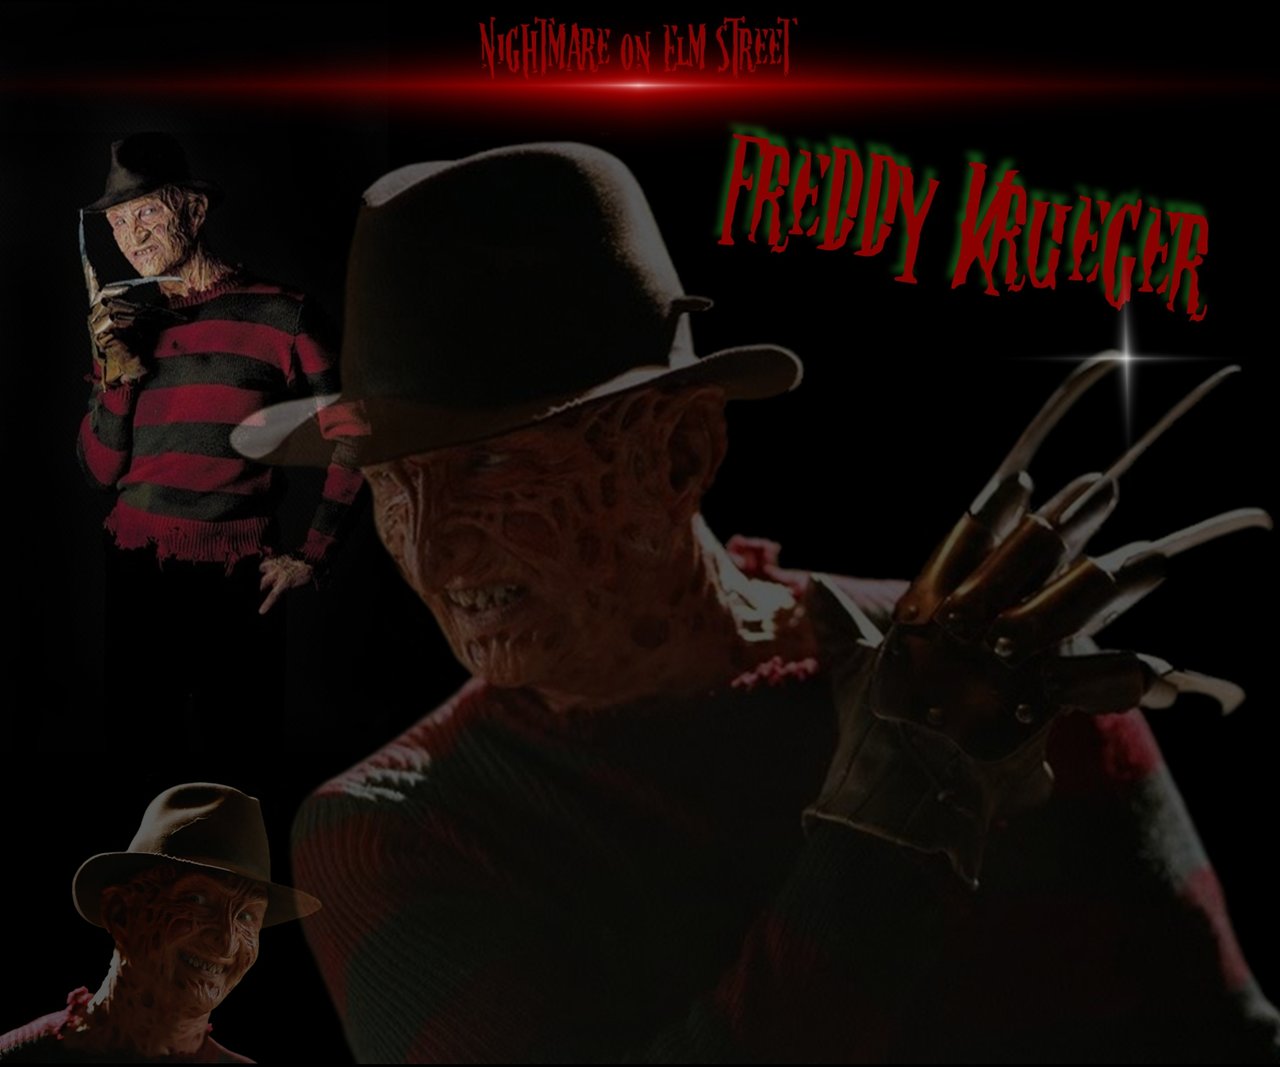 Freddy Krueger wallpaper by firebirdy89 on